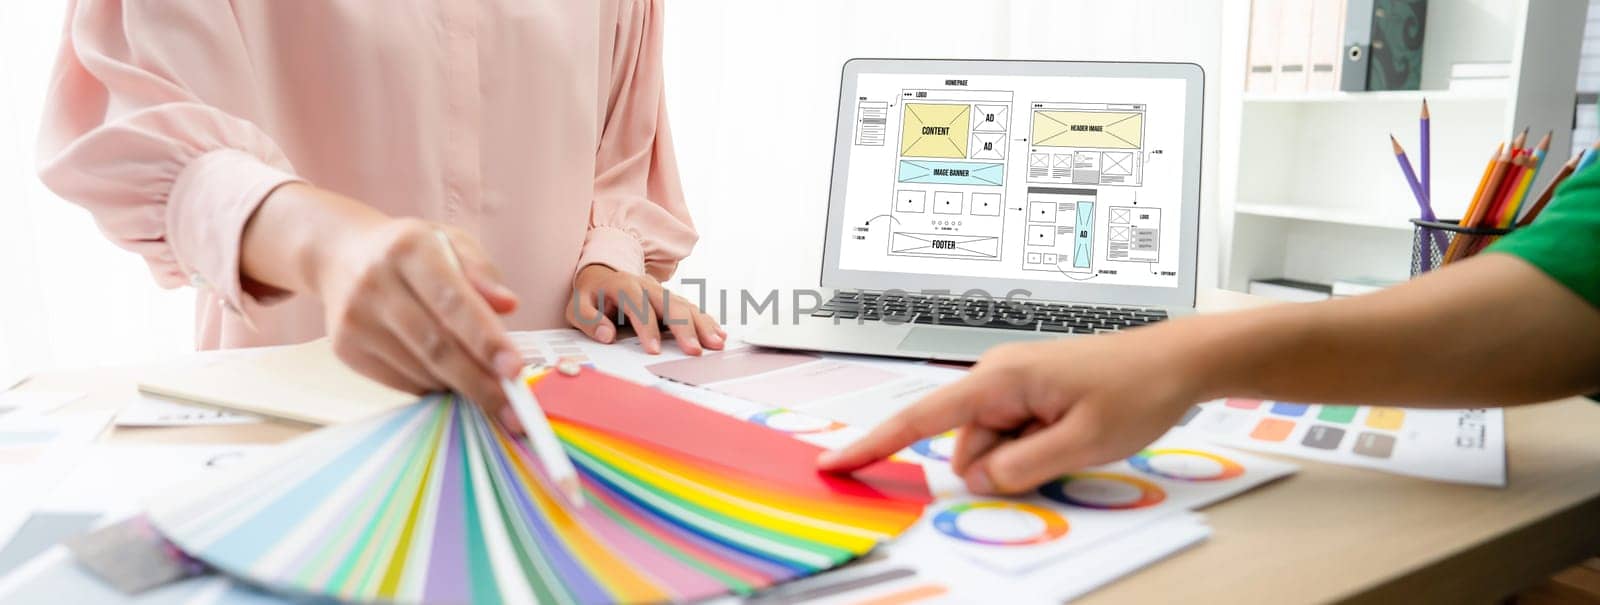 Designer chooses color while laptop displayed website designs Variegated. by biancoblue